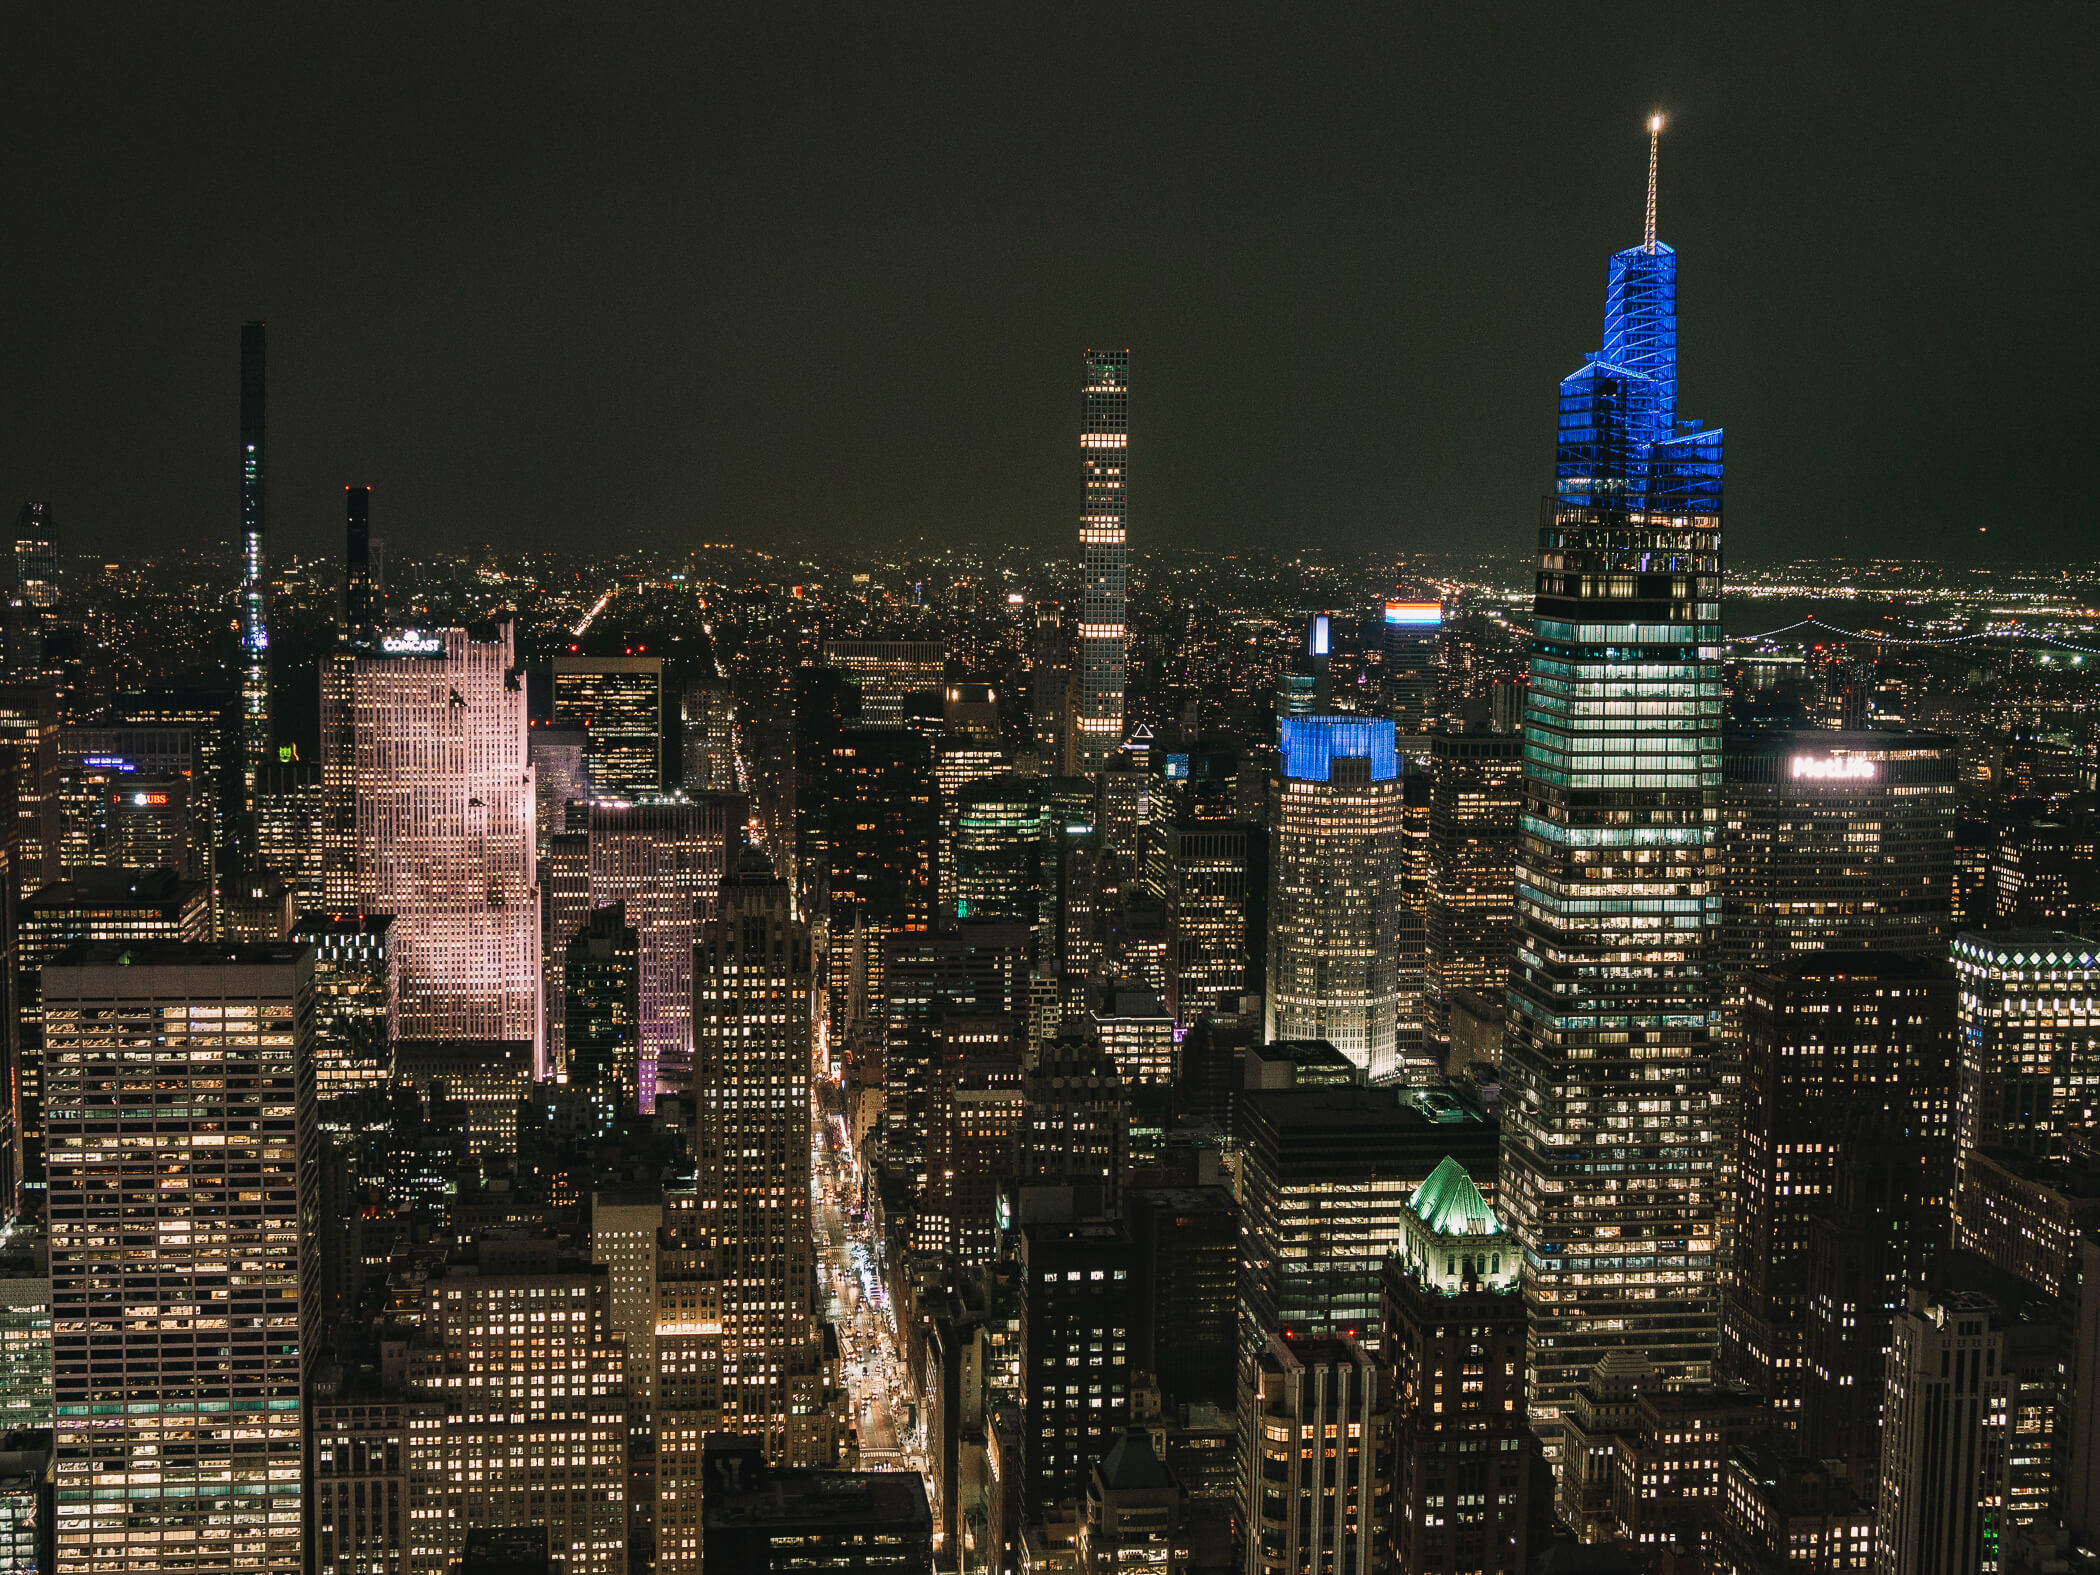 New York von oben - Aussichtsplattform New York City